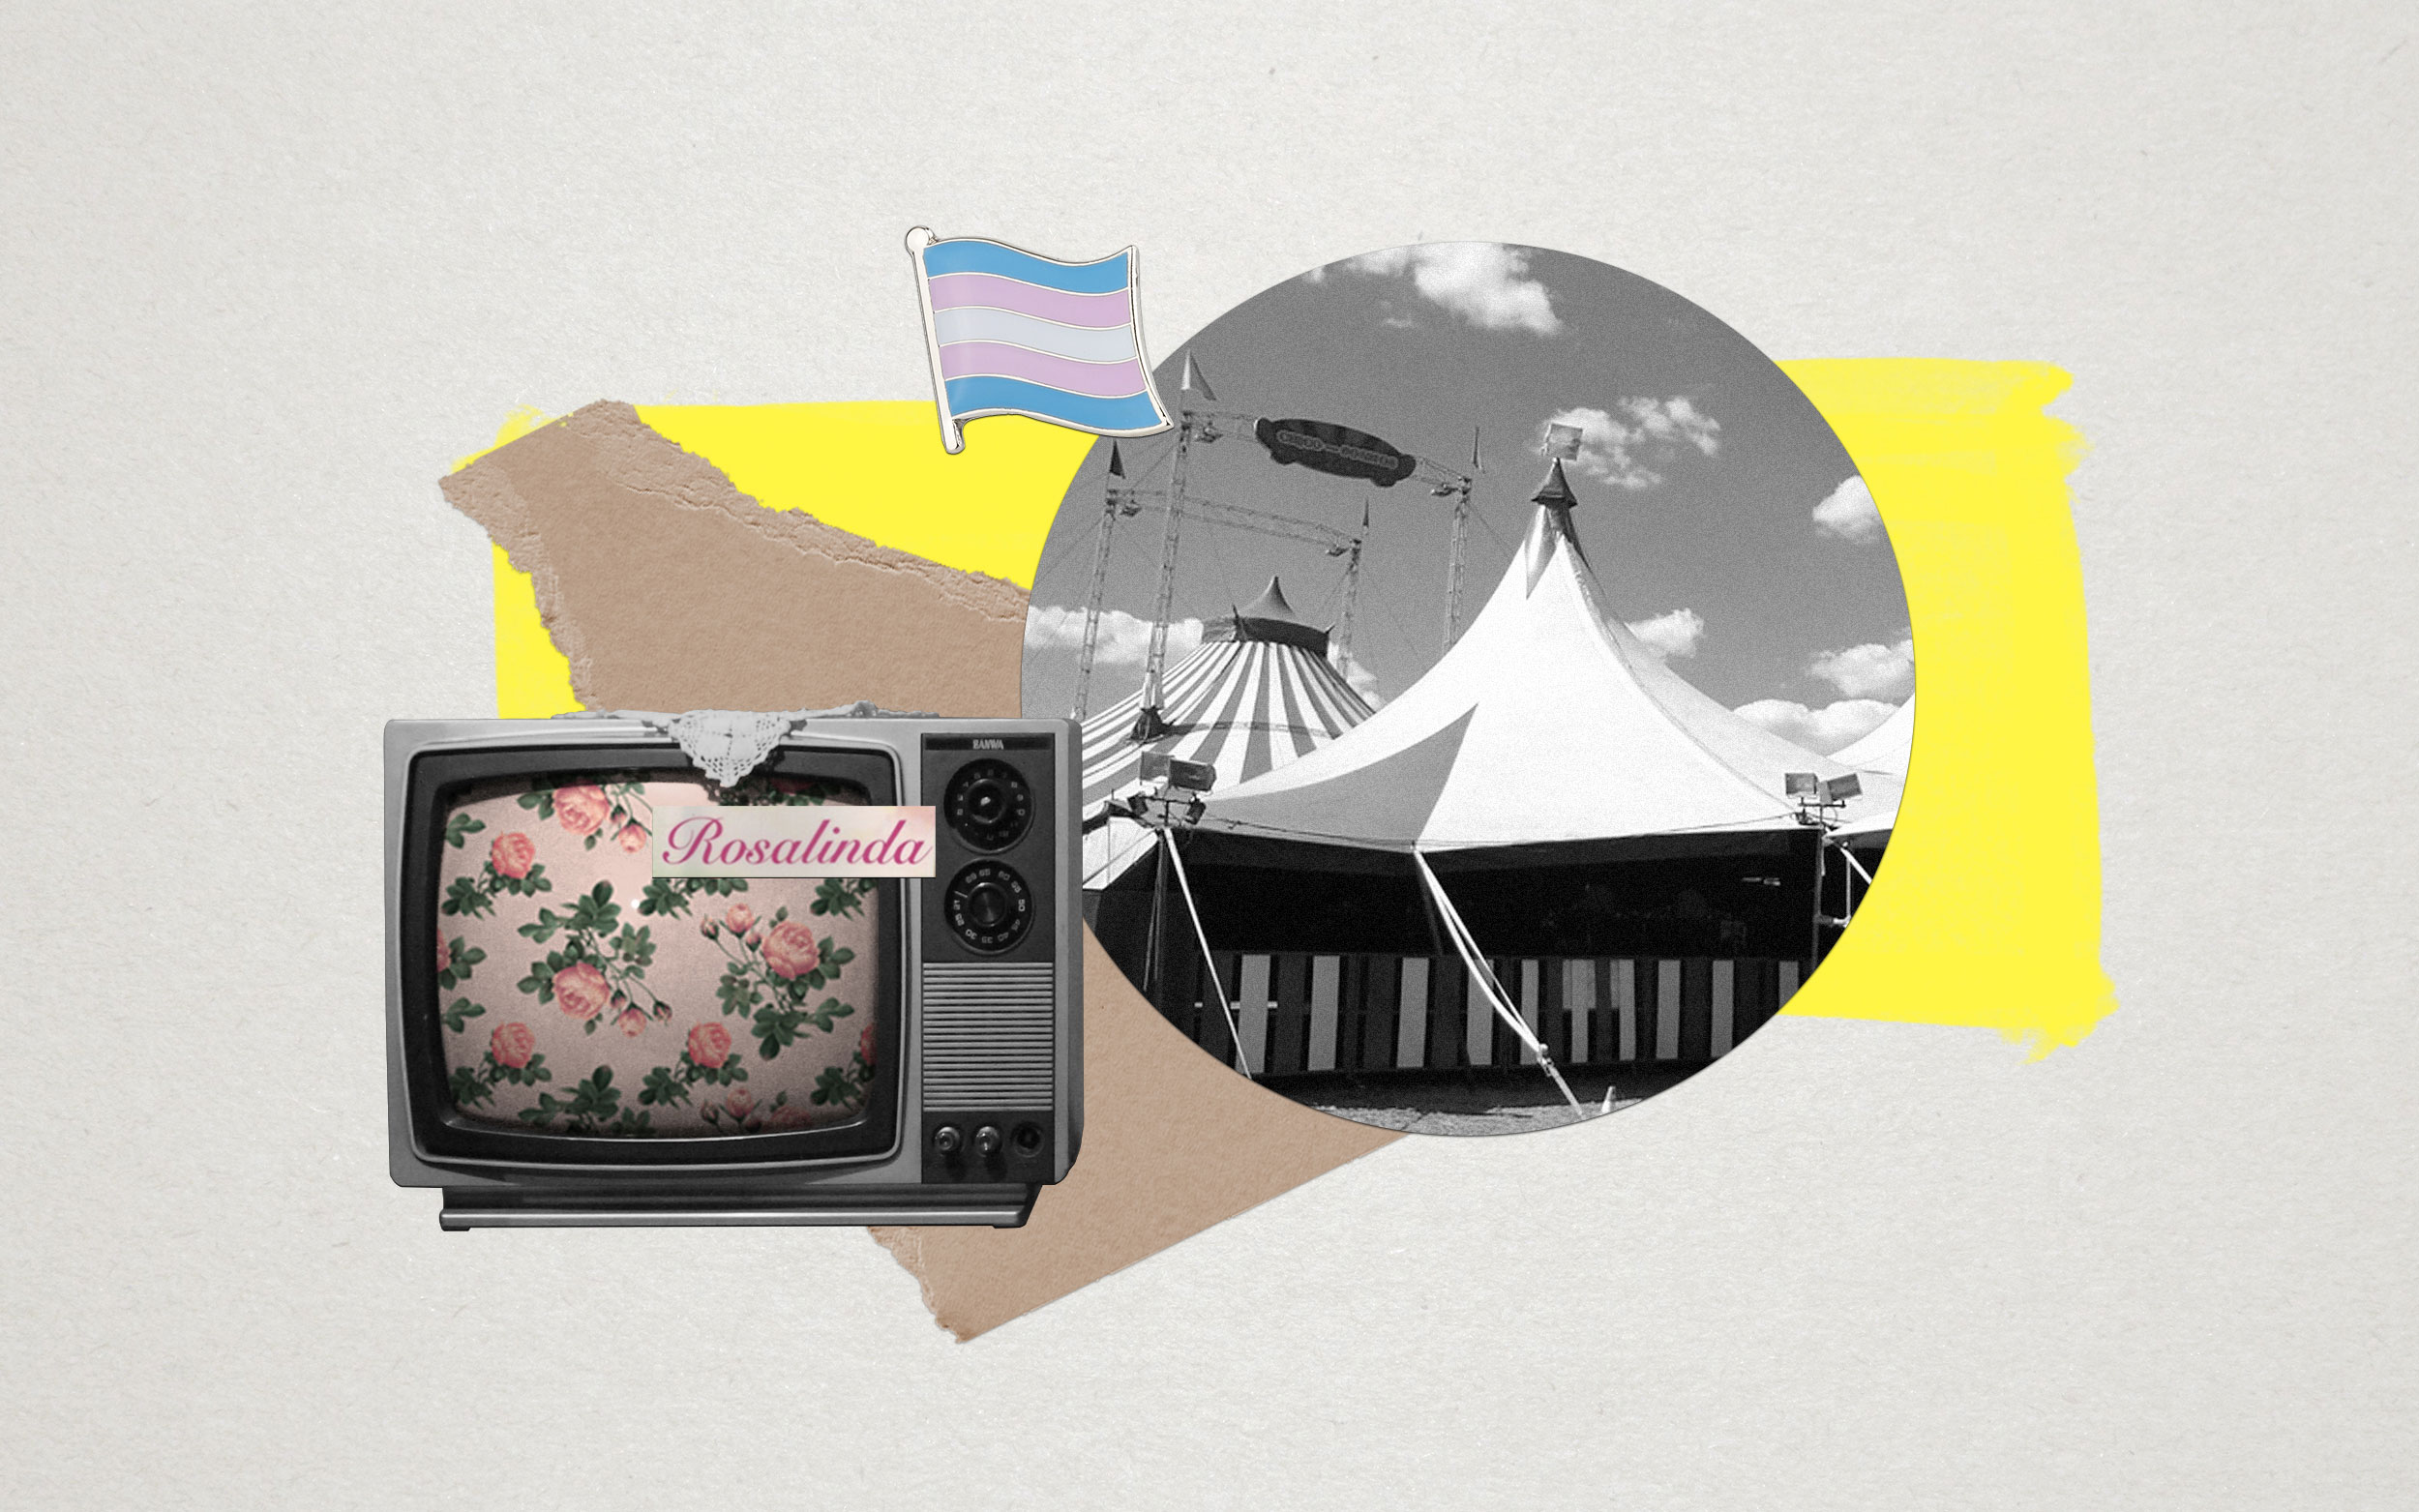 Pin de bandera trans, foto de circo a blanco y negro, abajo un televisor viejo presenta un letrero que dice “Rosalinda” y fondo de rosas